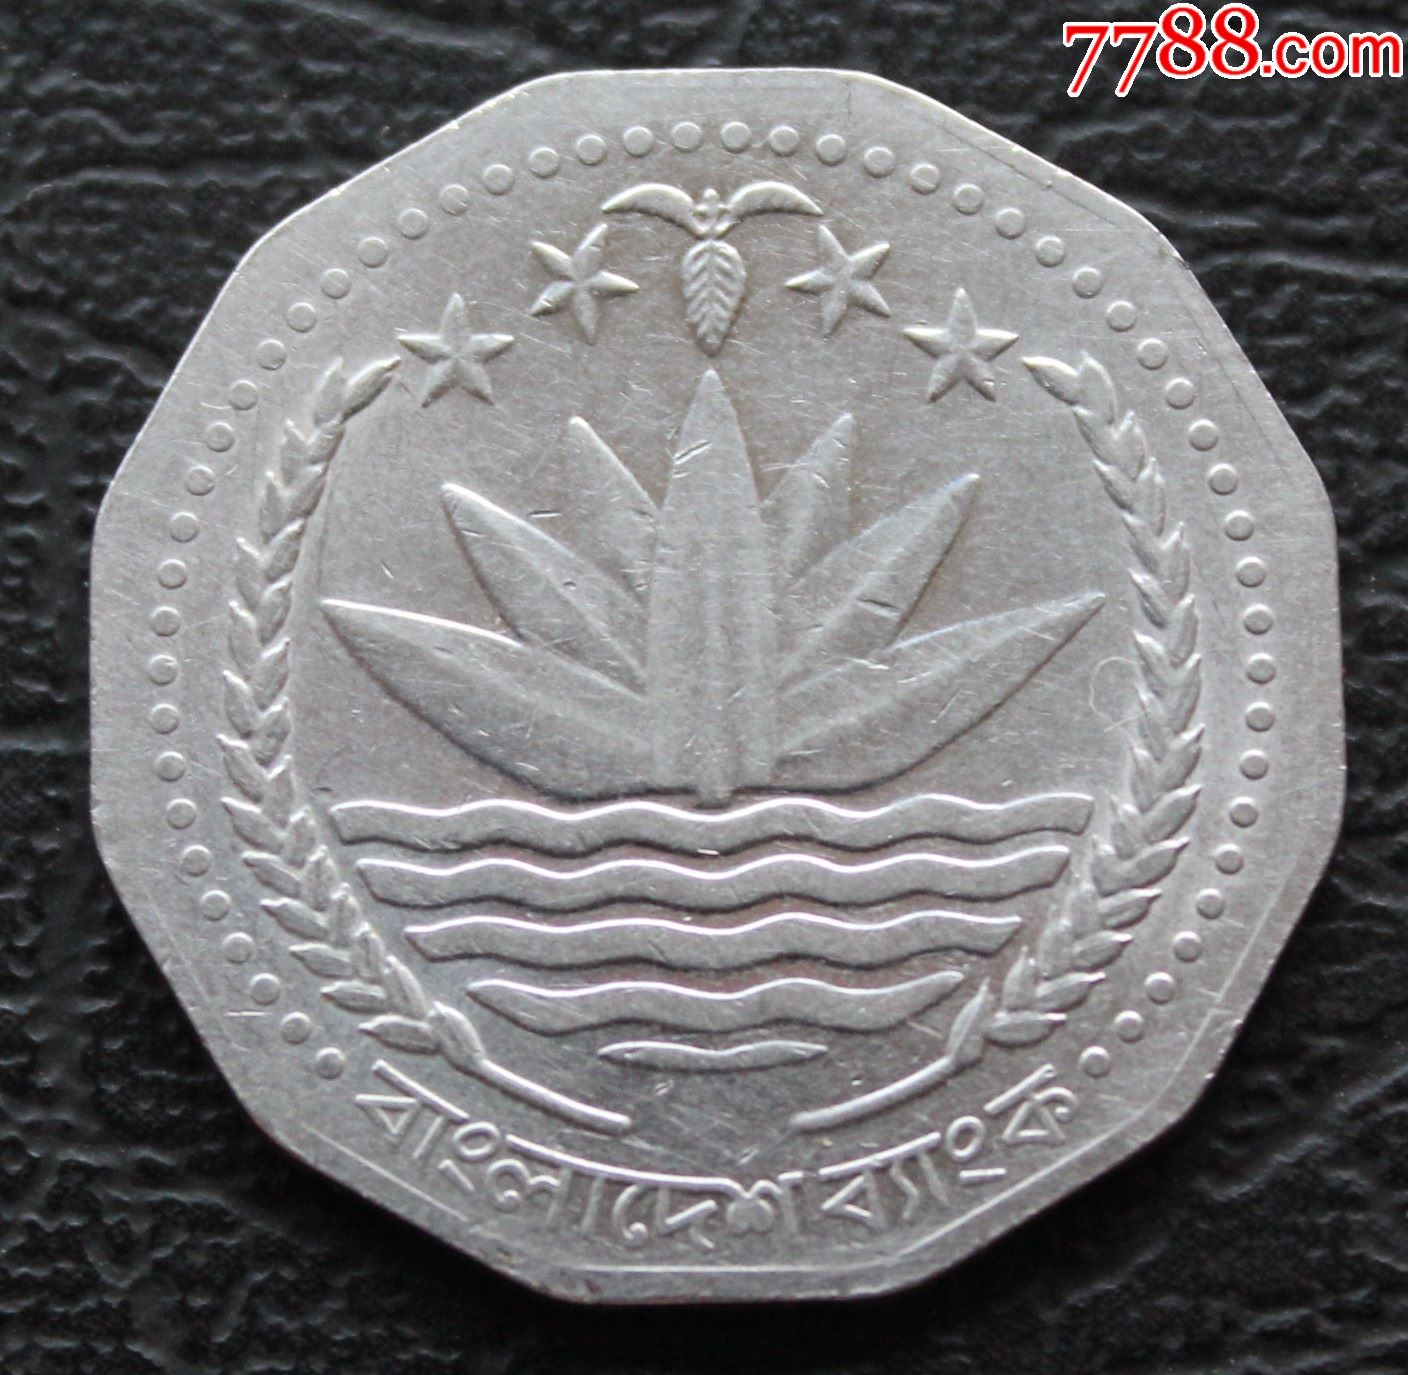 孟加拉国1998年硬币5塔卡一枚12边型造型独特